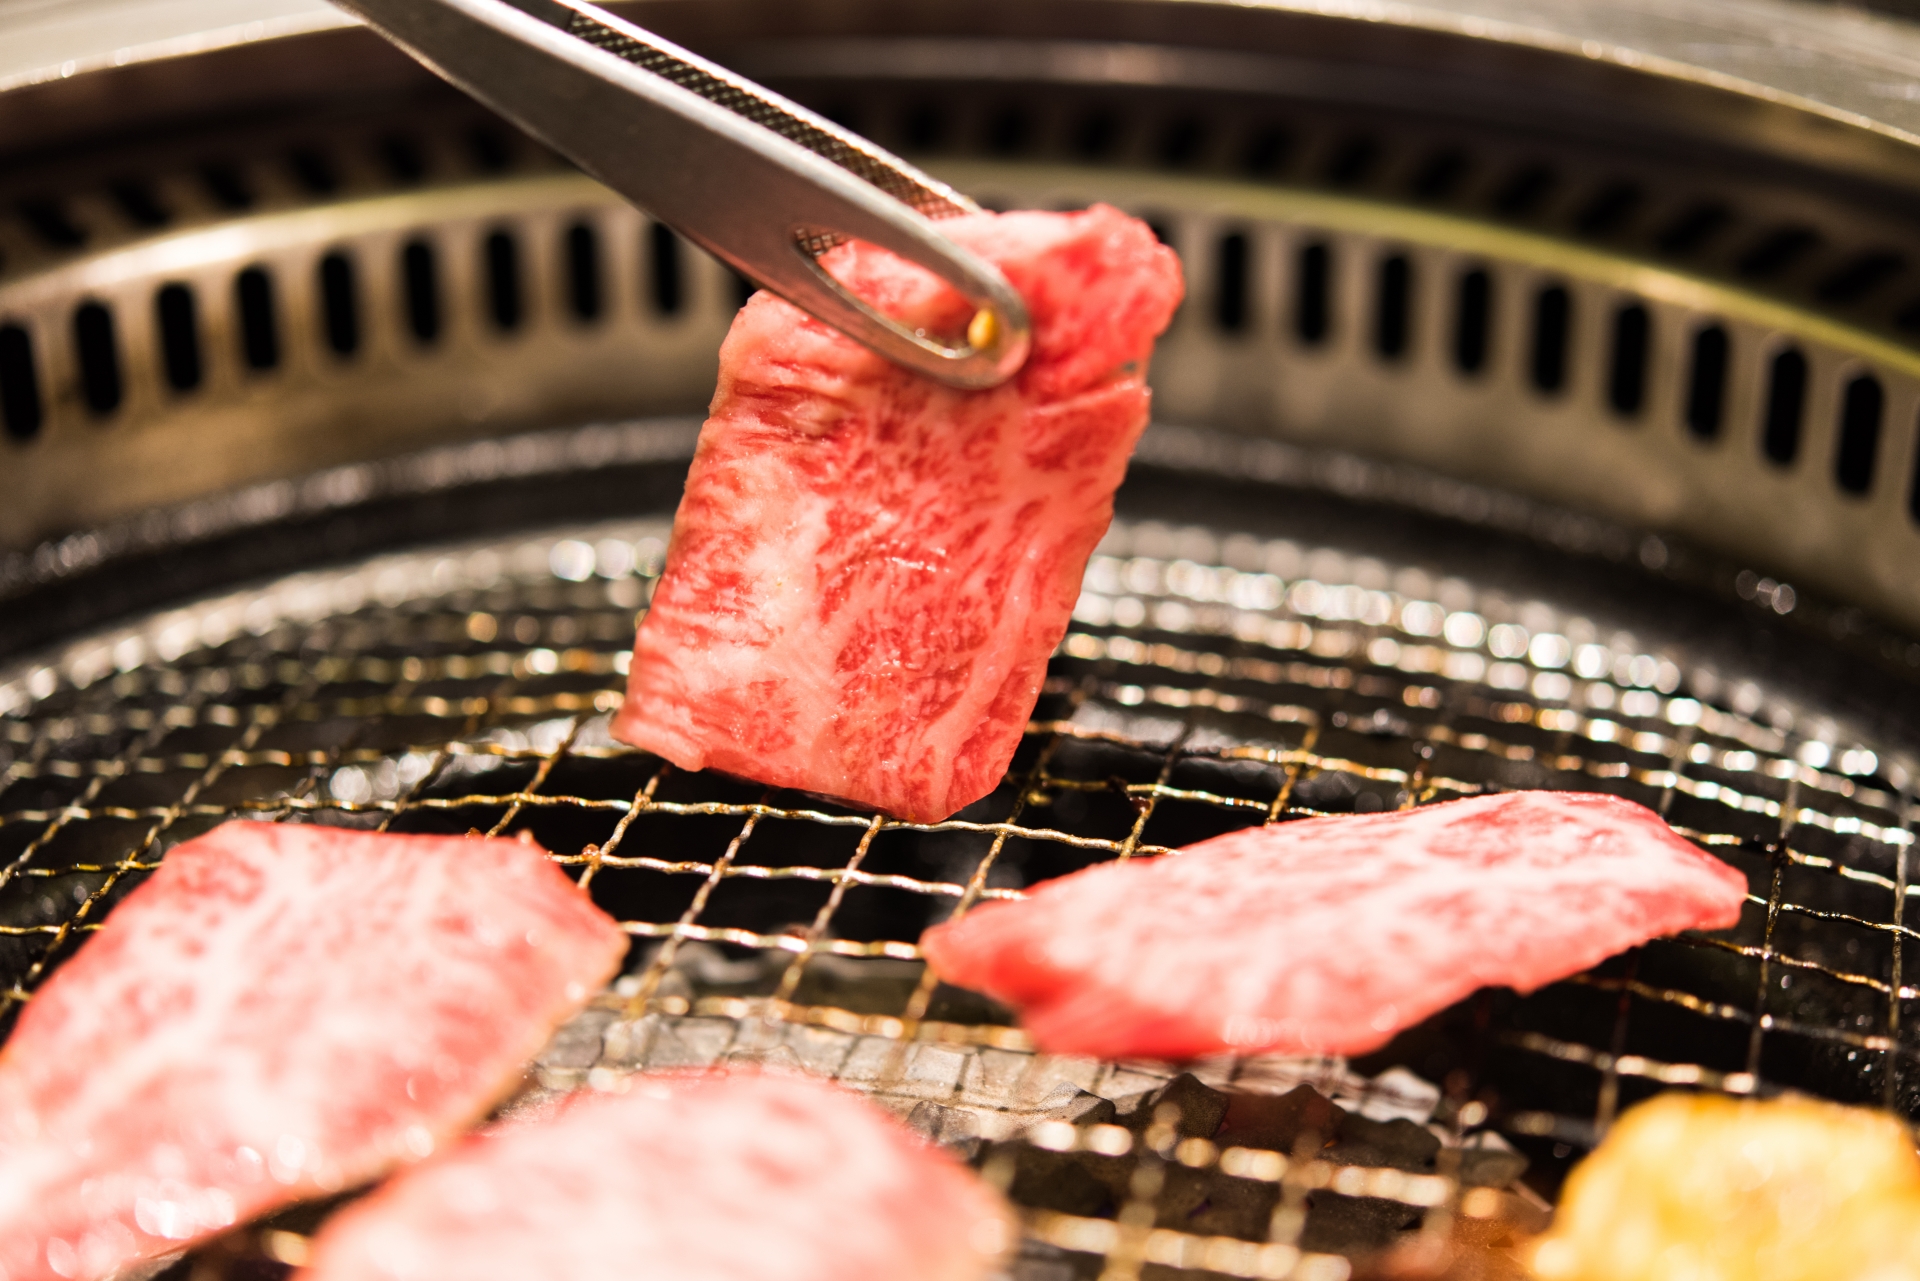 【アルバイト体験談インタビュー】千葉駅の焼き肉店ホールのアルバイト体験